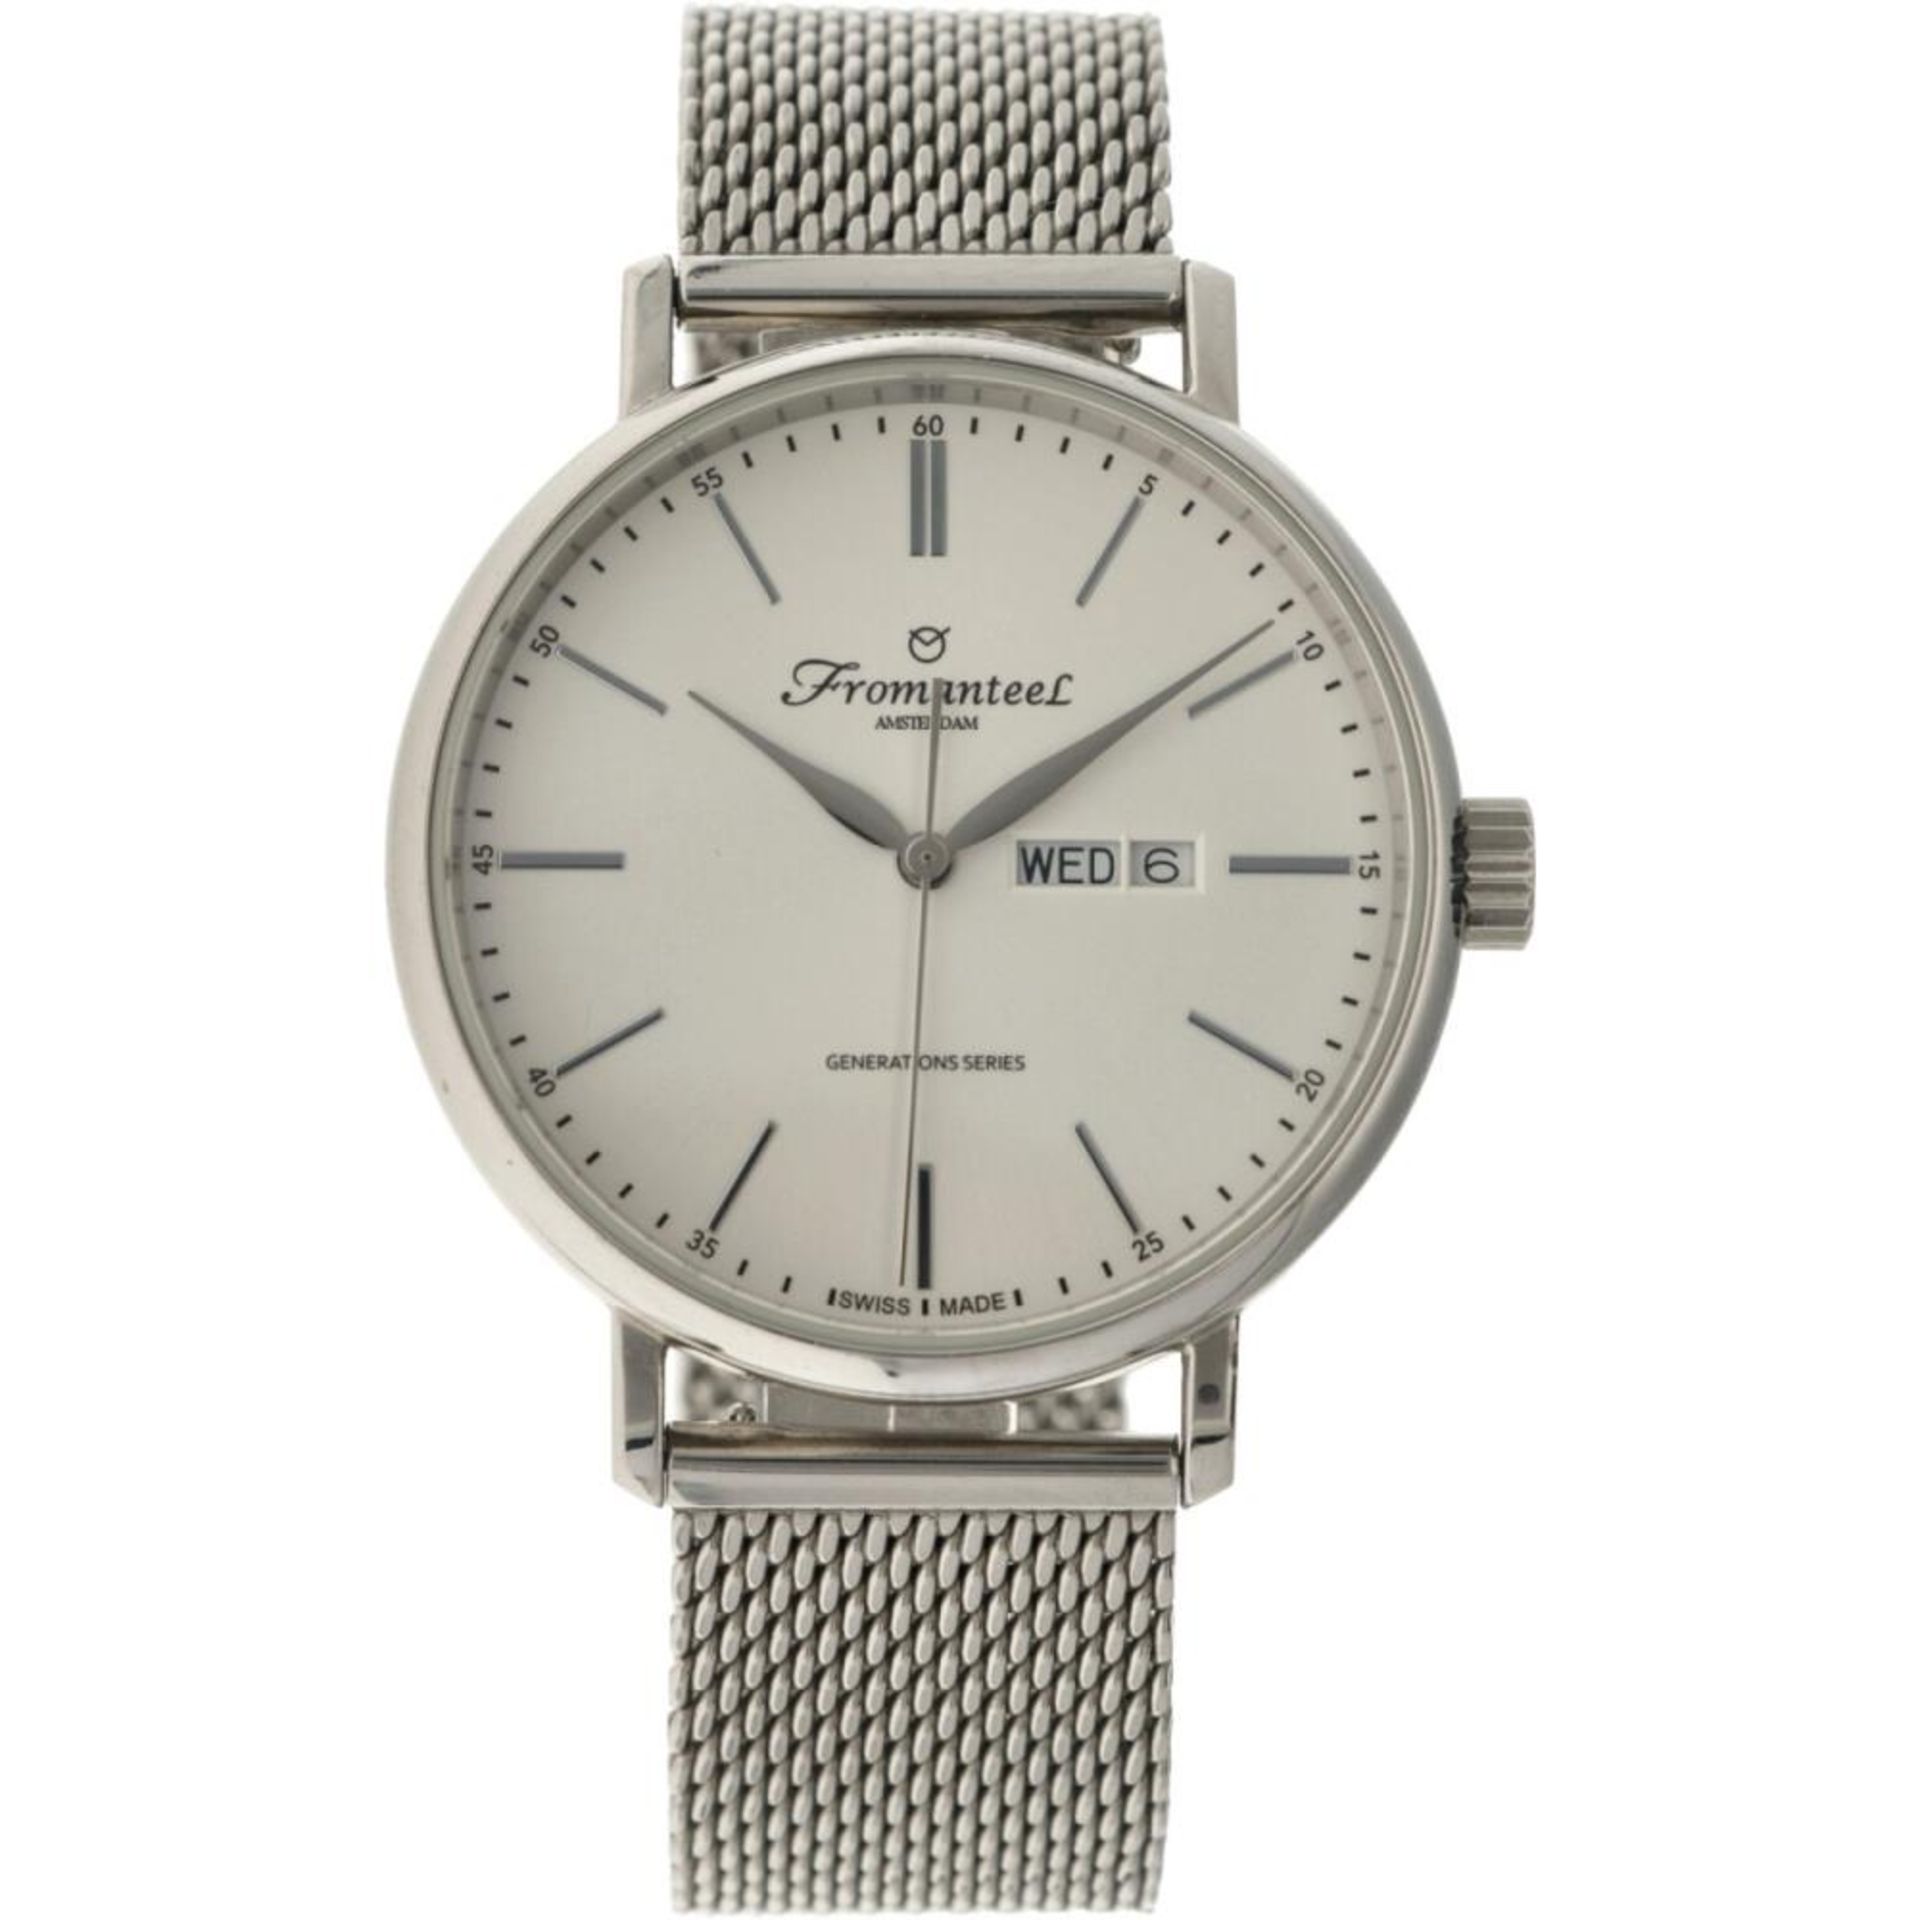 Fromanteel Generations Series 0801-0425 - Men's watch.